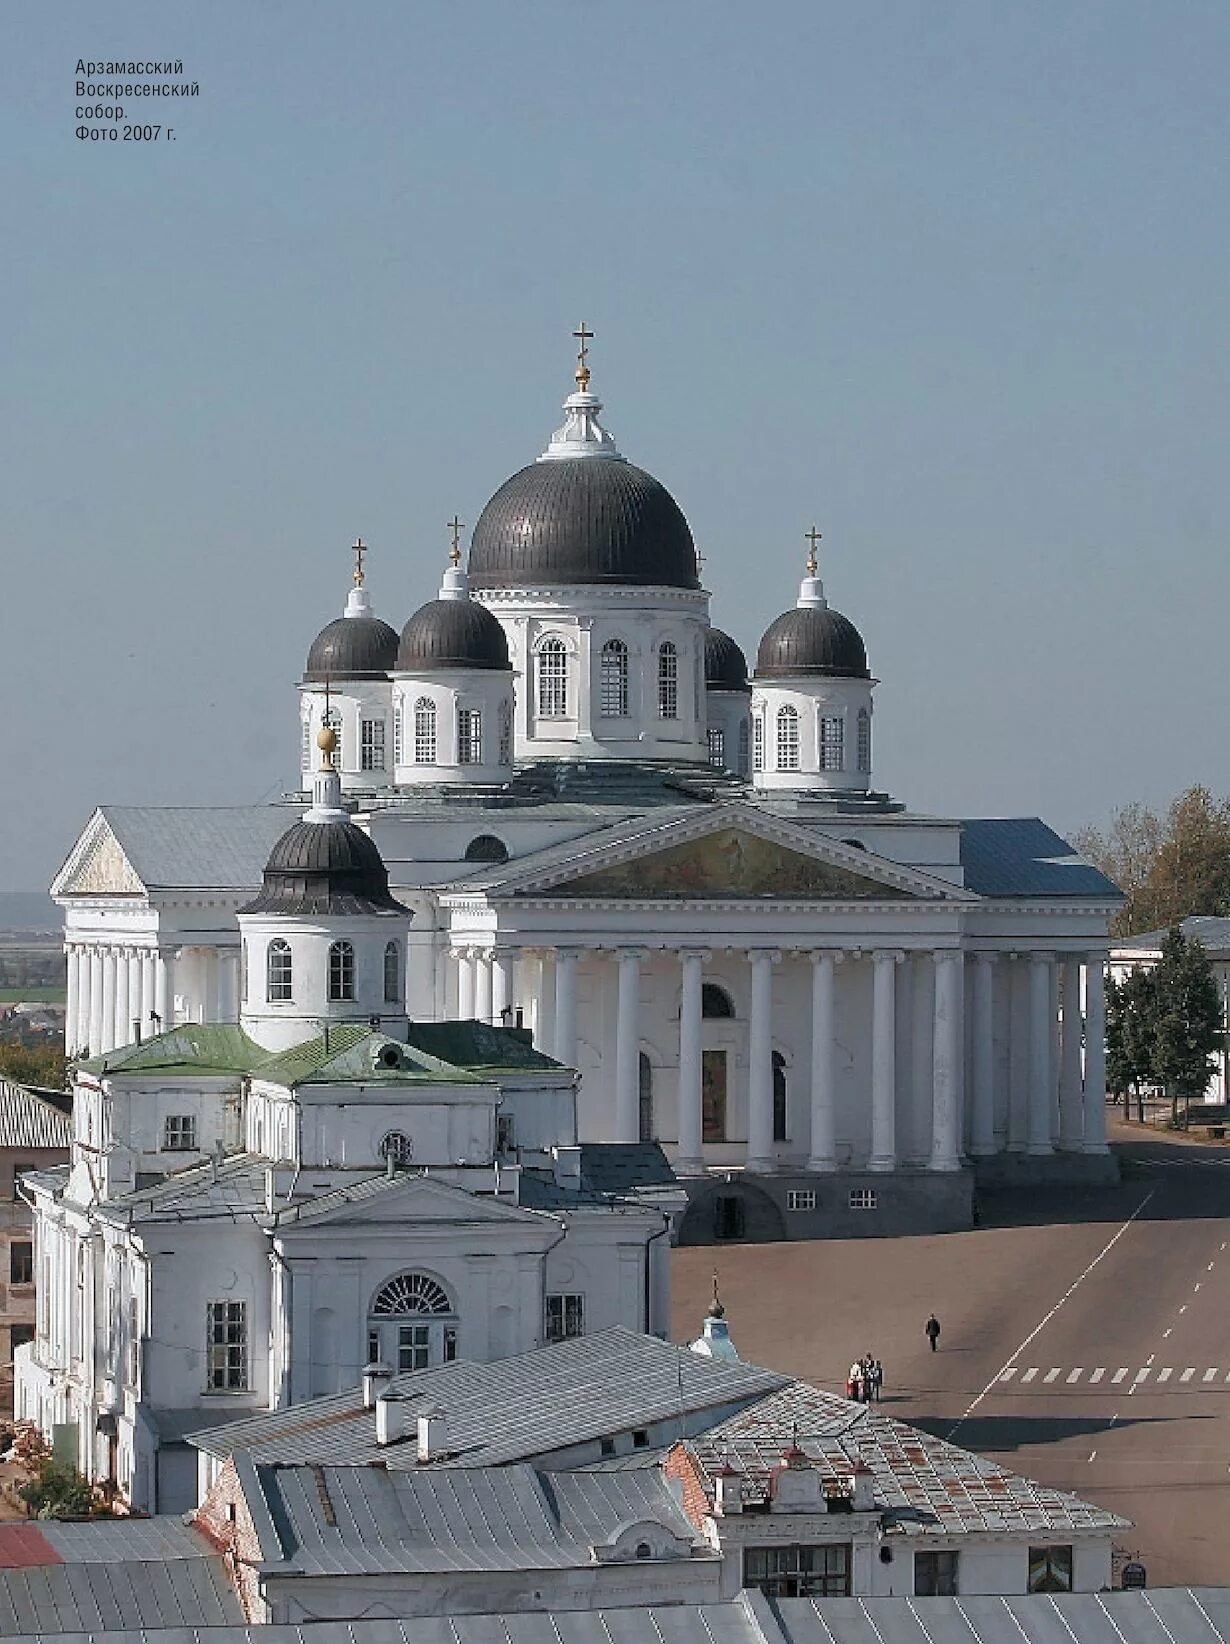 Арзамас нижний новгород сегодня. Нижний Новгород город Арзамас. Арзамас 33 церкви.